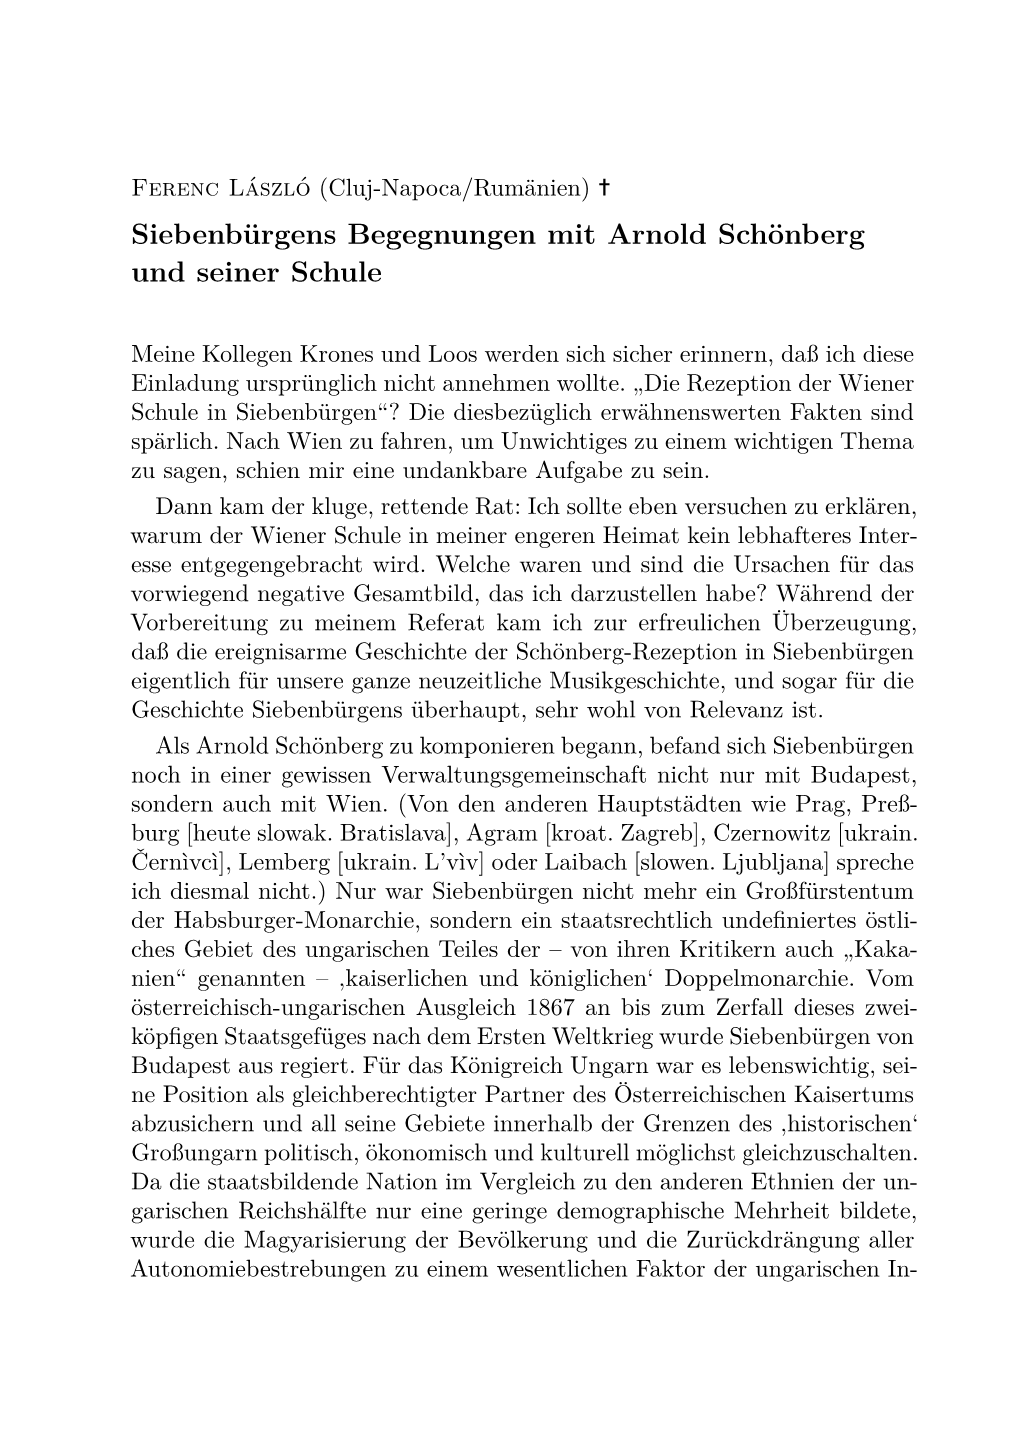 Siebenbürgens Begegnungen Mit Arnold Schönberg Und Seiner Schule